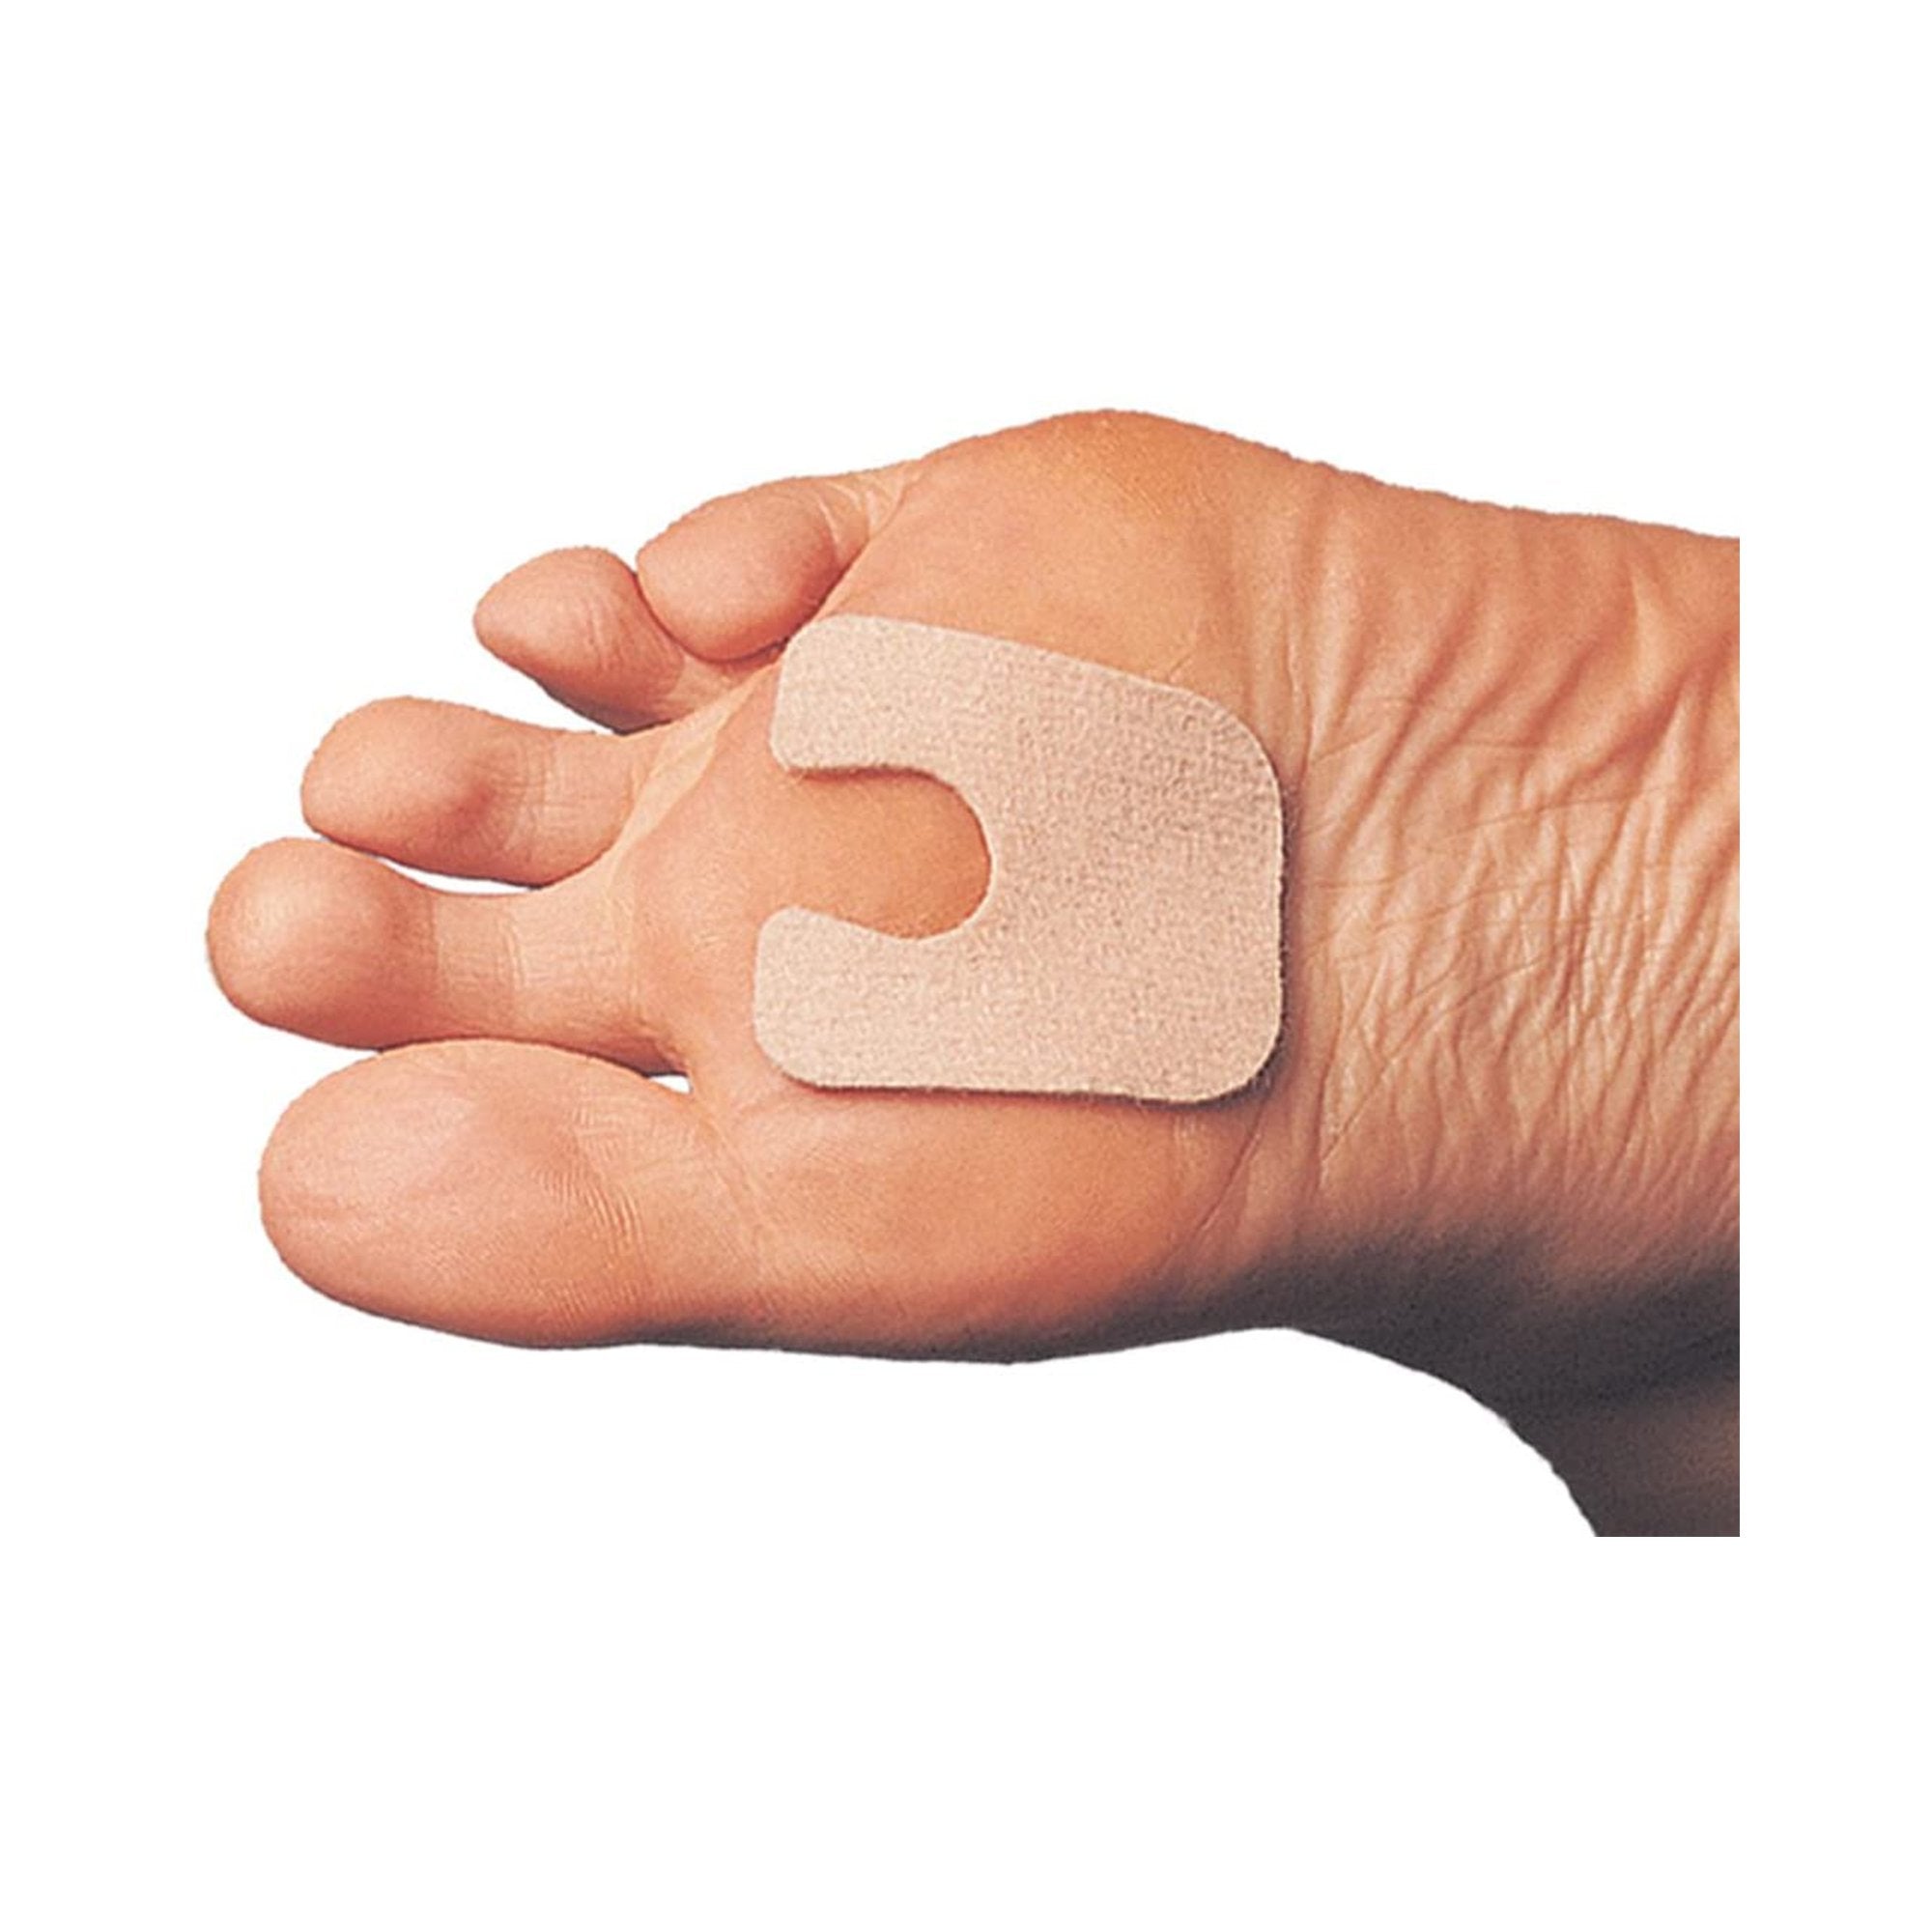 Callus Pad PediFix FELTastic One Size Fits Most Adhesive Foot